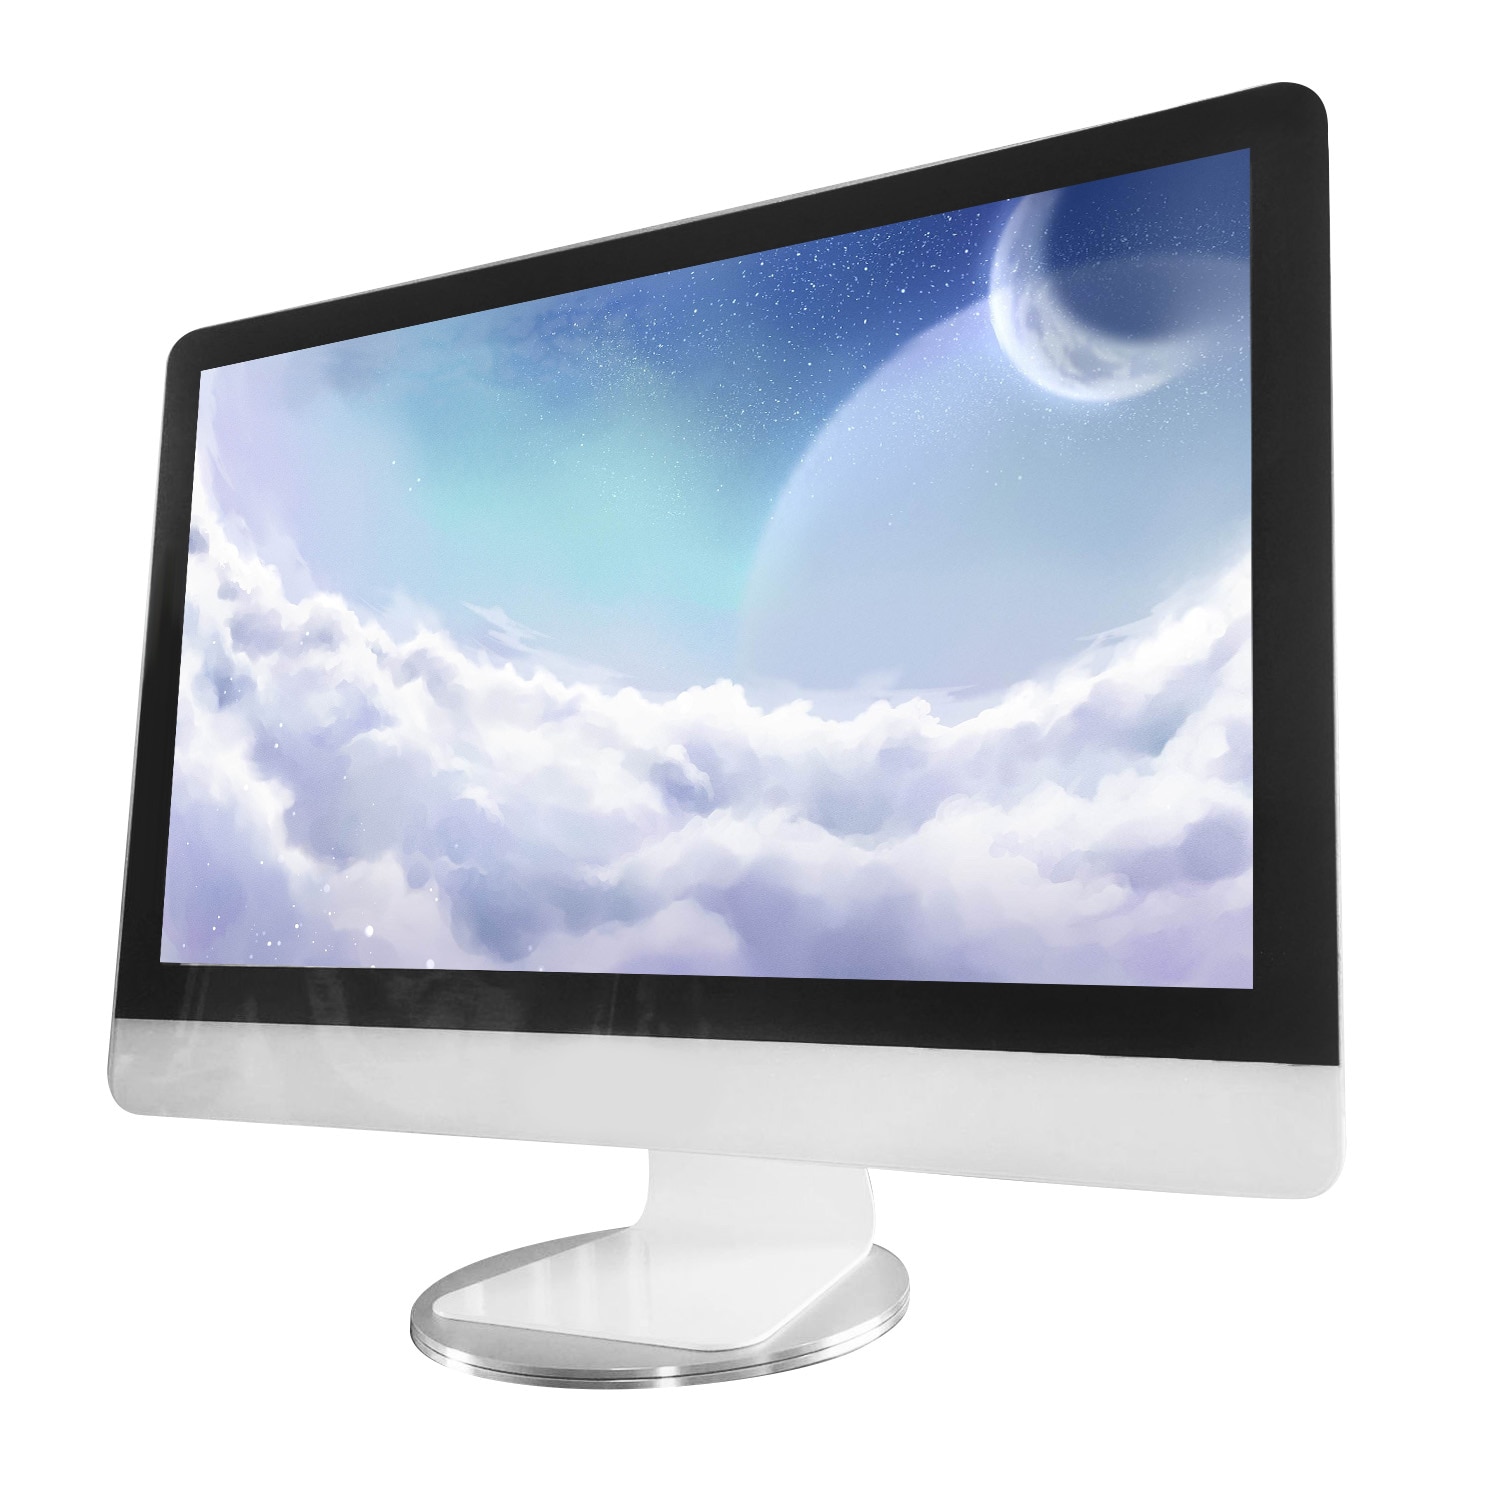 Besegad 360 Graden Rotatie Aluminium Laptop Computer Monitor Stand Base Dock voor Apple iMac i Mac Televisie Projector